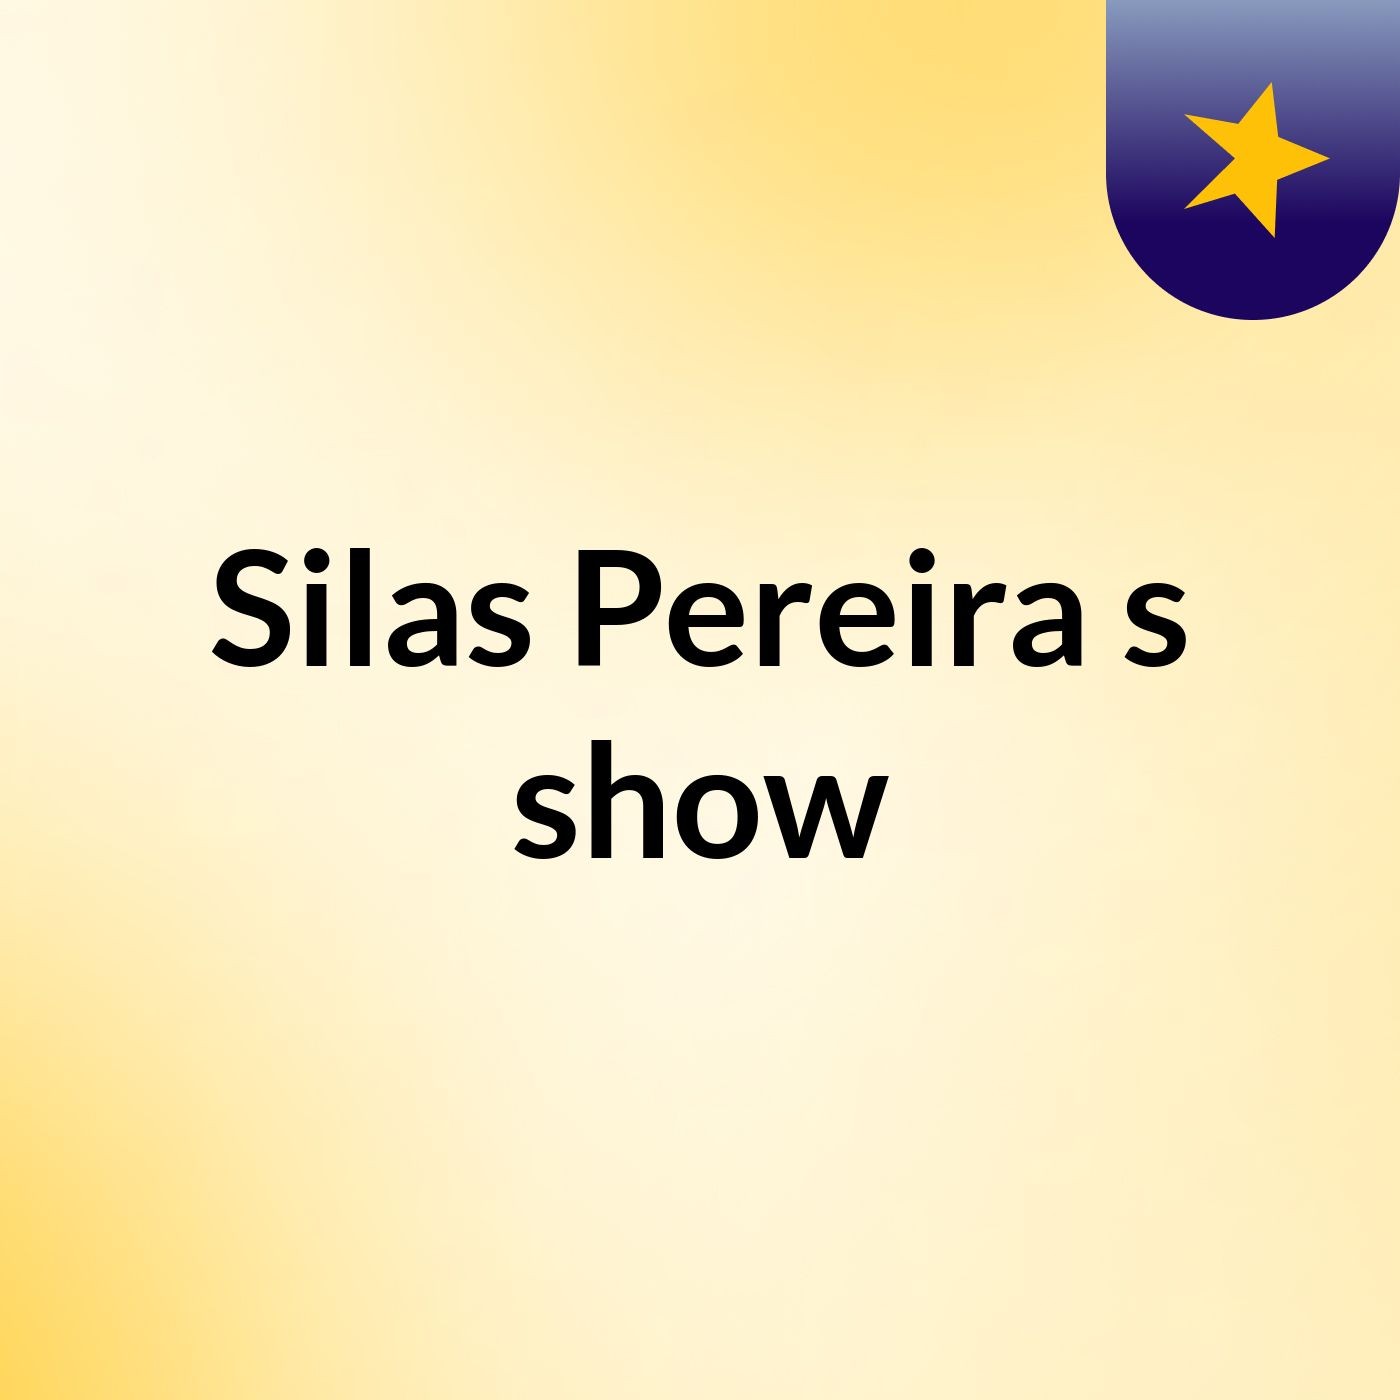 Silas Pereira's show